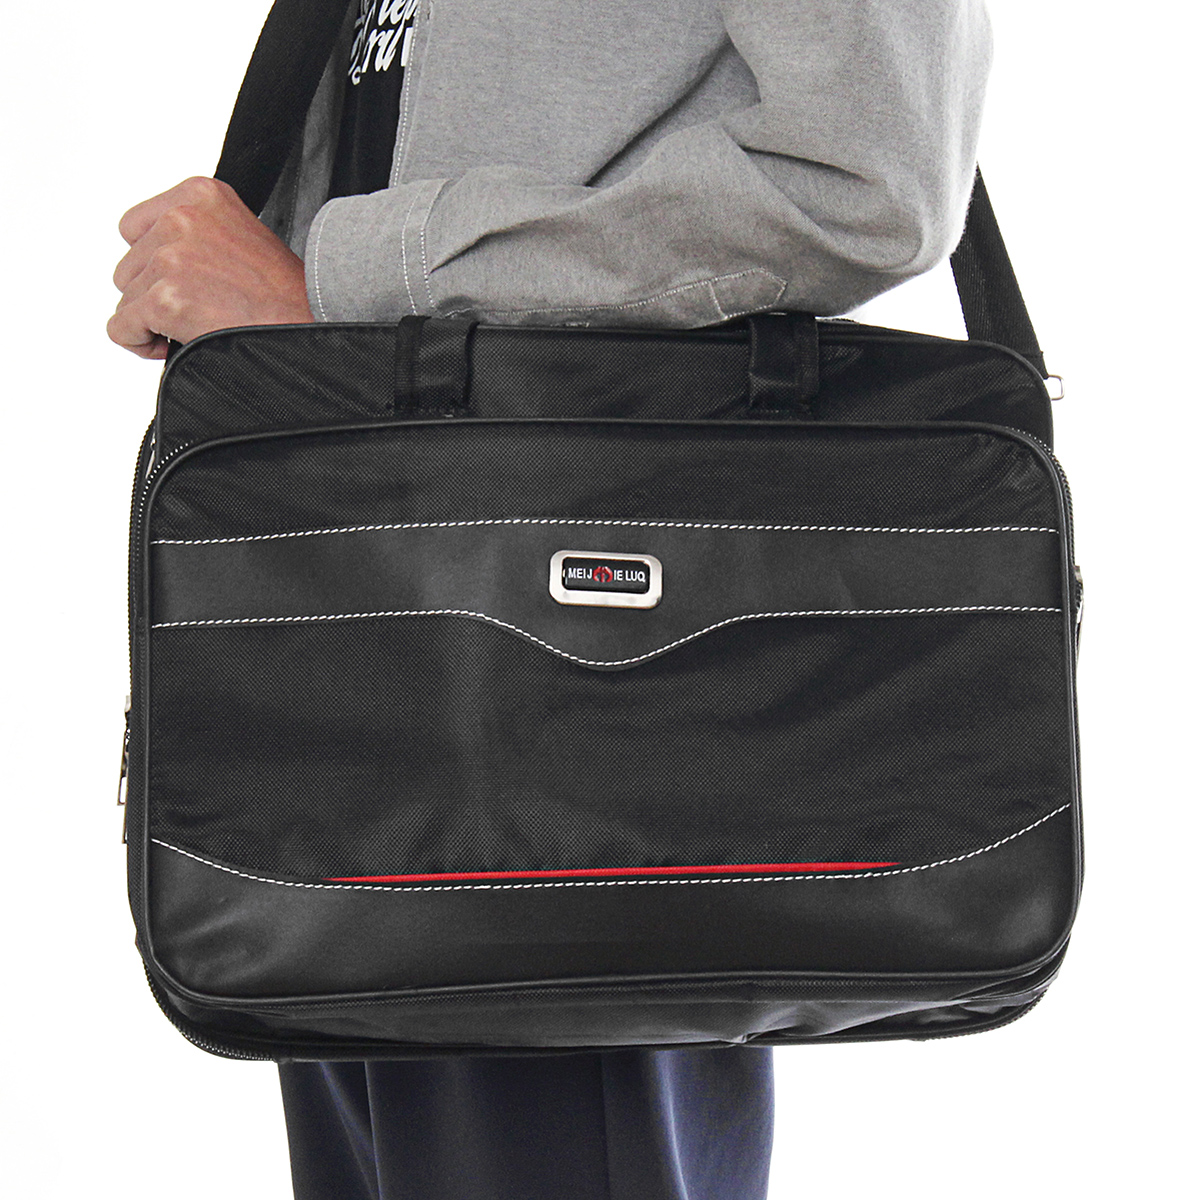 15amp17-Inch-Carrying-Sleeve-Case-Shoulder-Bag-Handbag-for-MacBook-Laptop-1180781